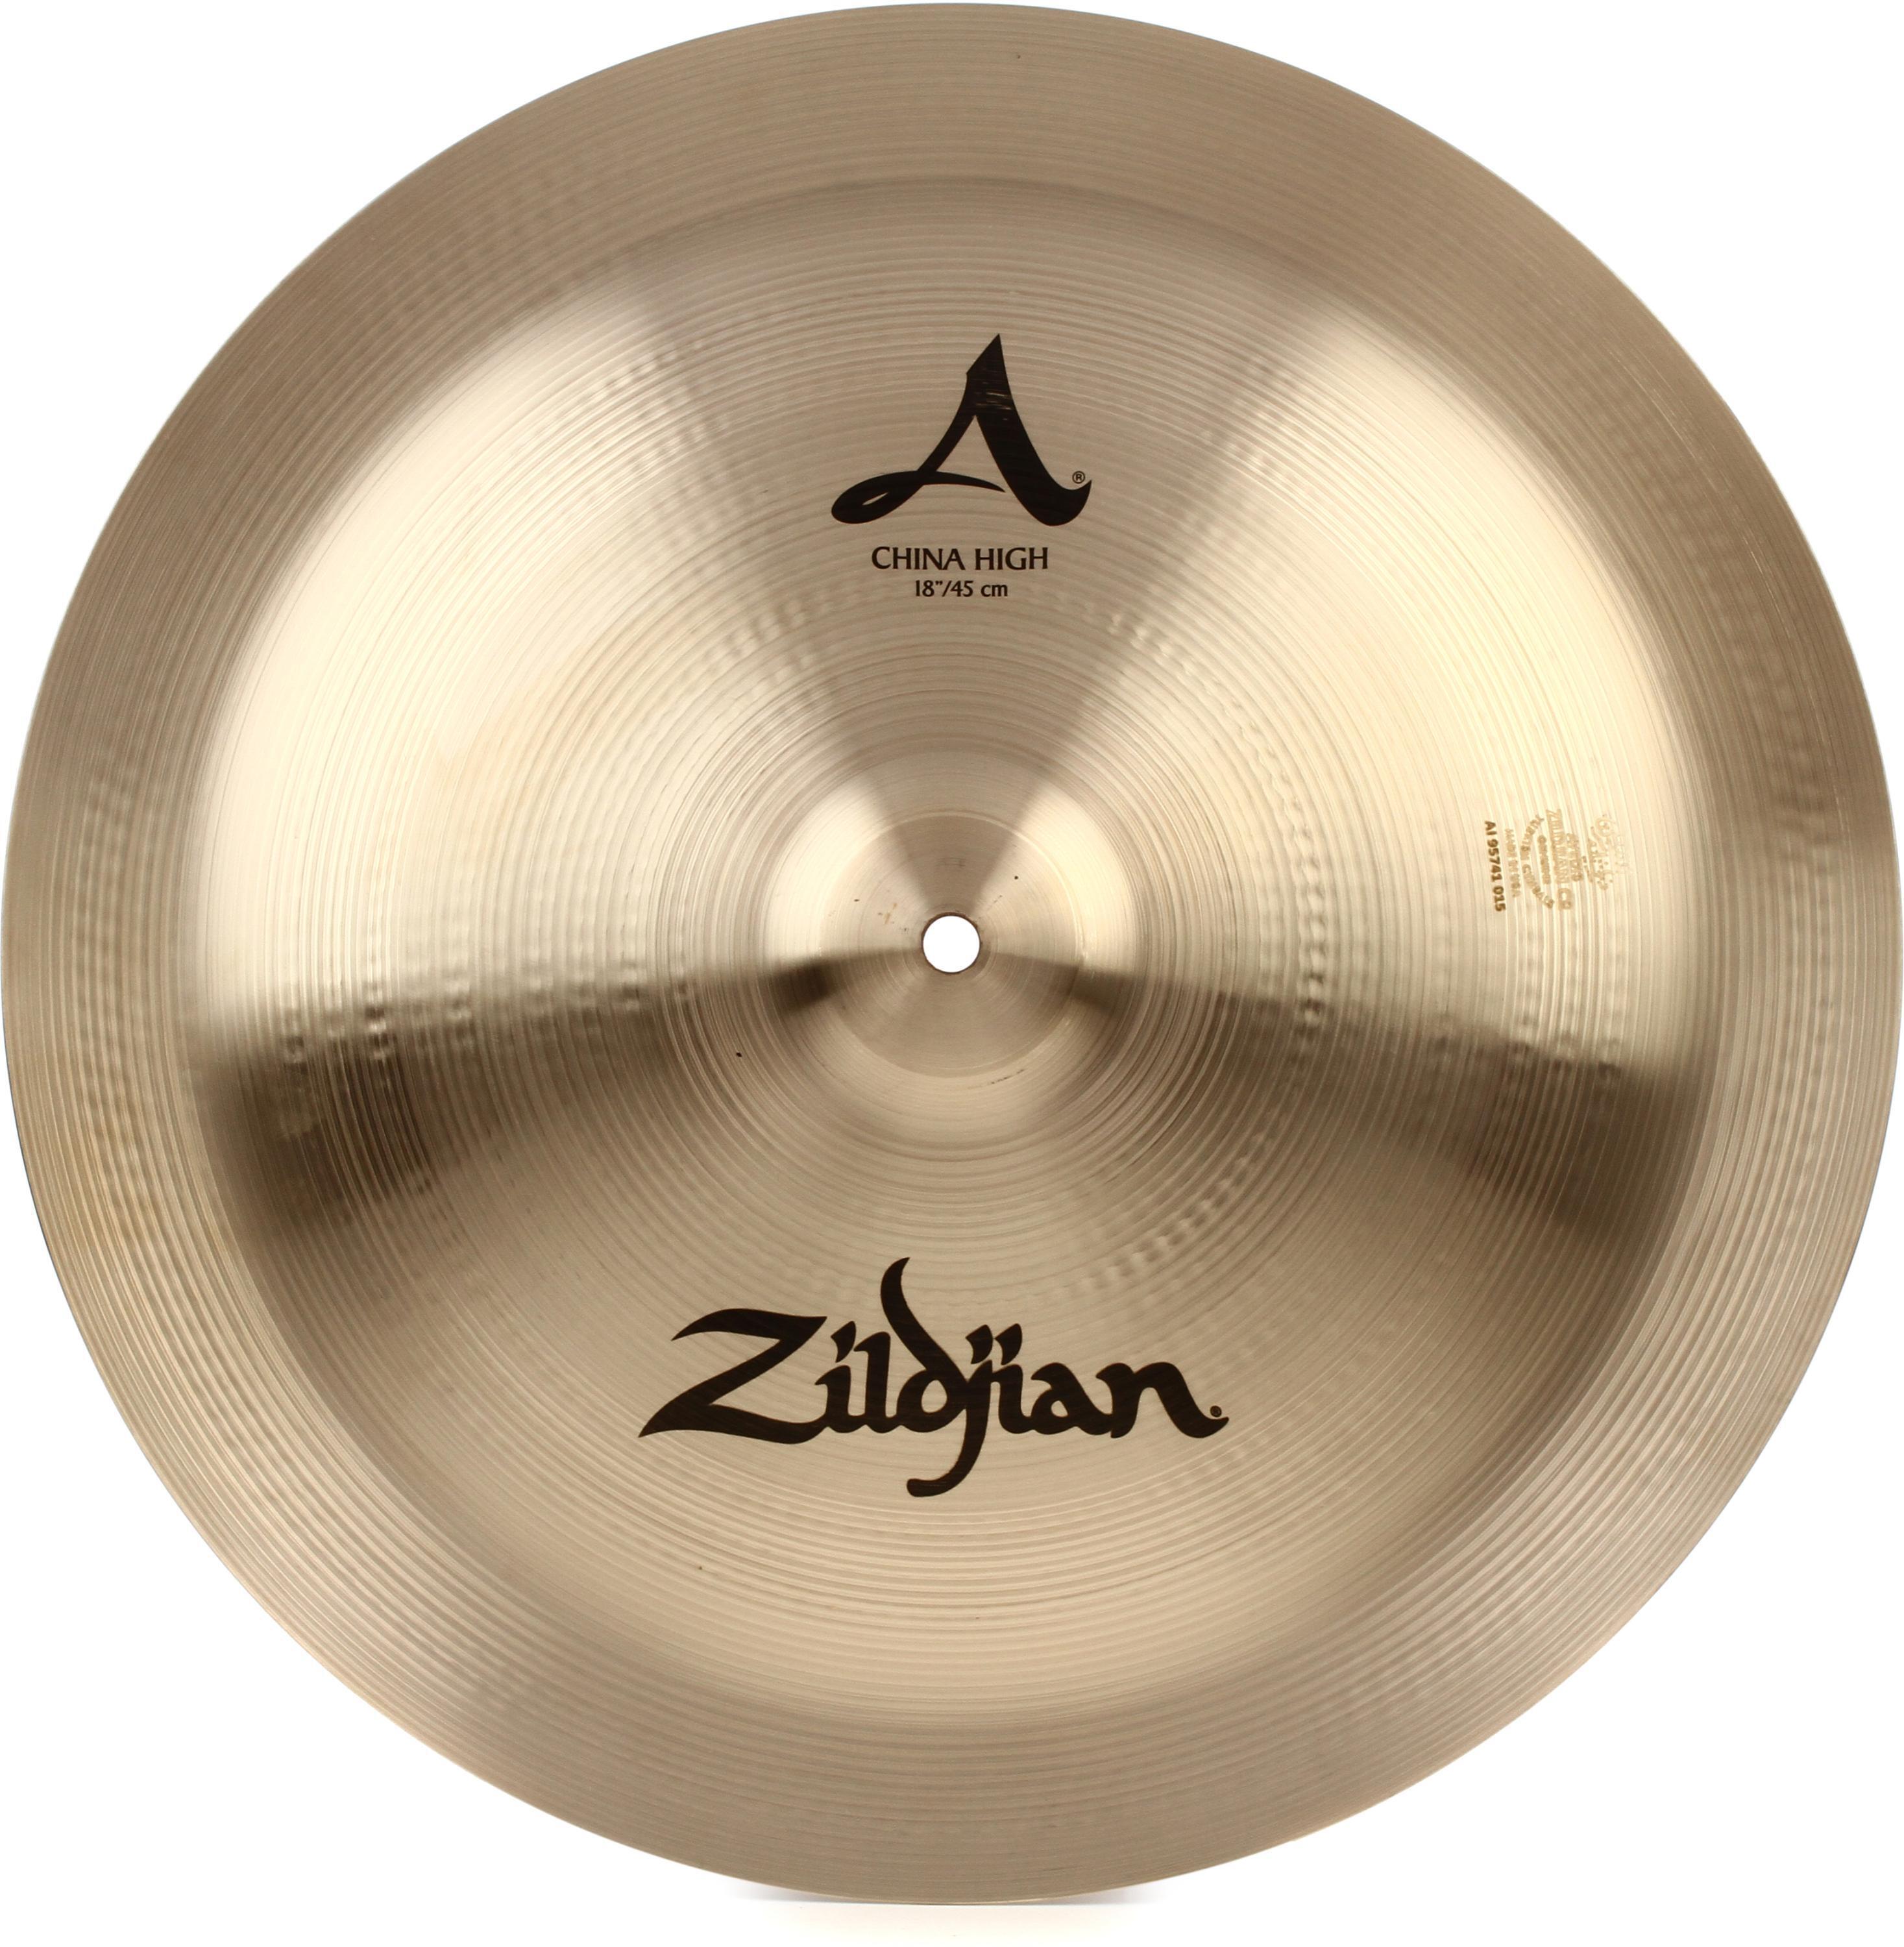 Zildjian 18 inch A Zildjian China Cymbal - High Pitch | Sweetwater